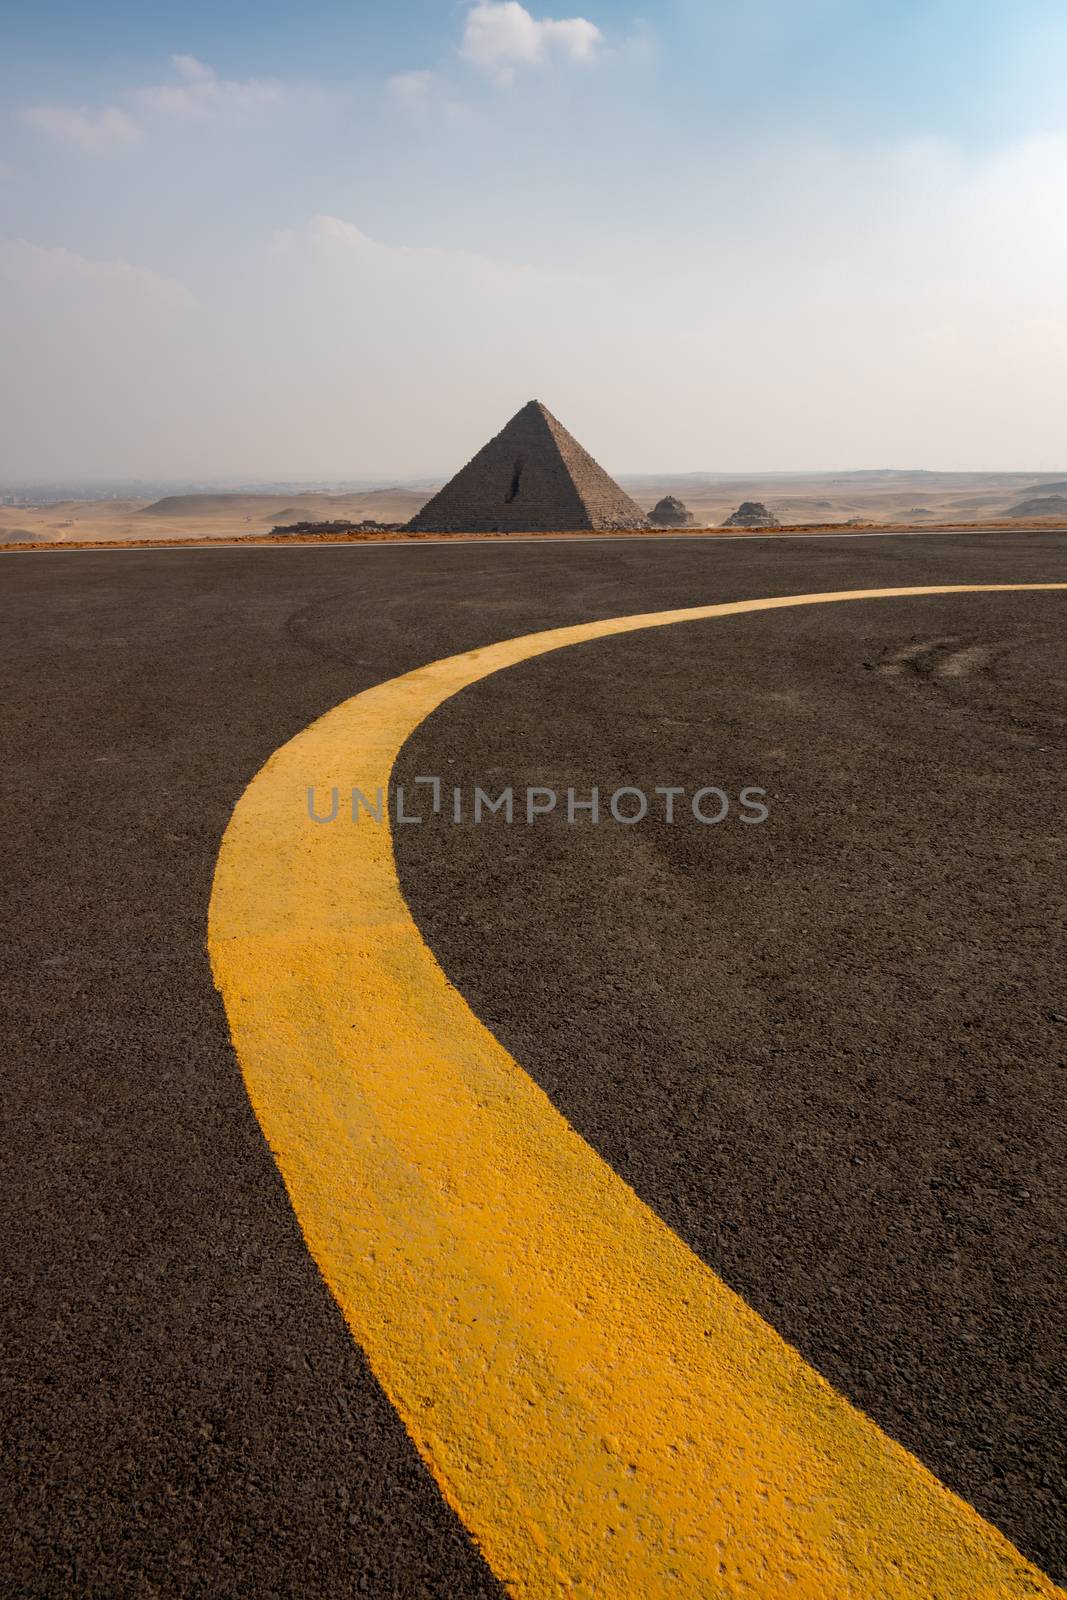 Pyramids at Giza Cairo Egypt by magann